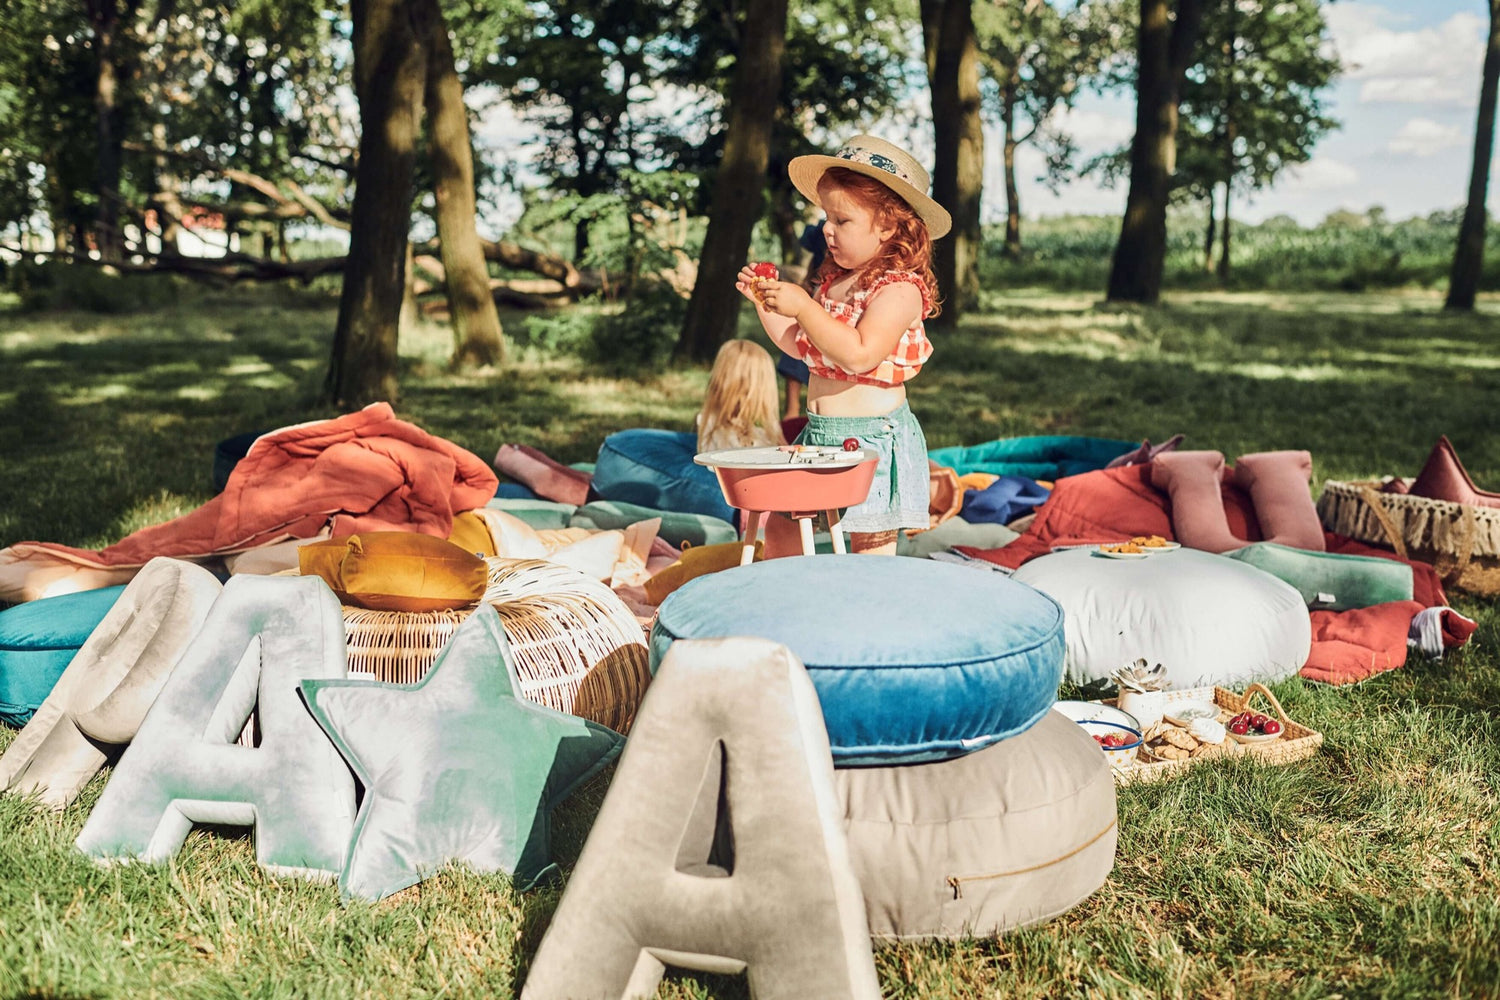 dziewczynka w ogrodzie w trakcie pikniku bawi się a obok niej stoją poduszki literki welurowe od Bettys Home  